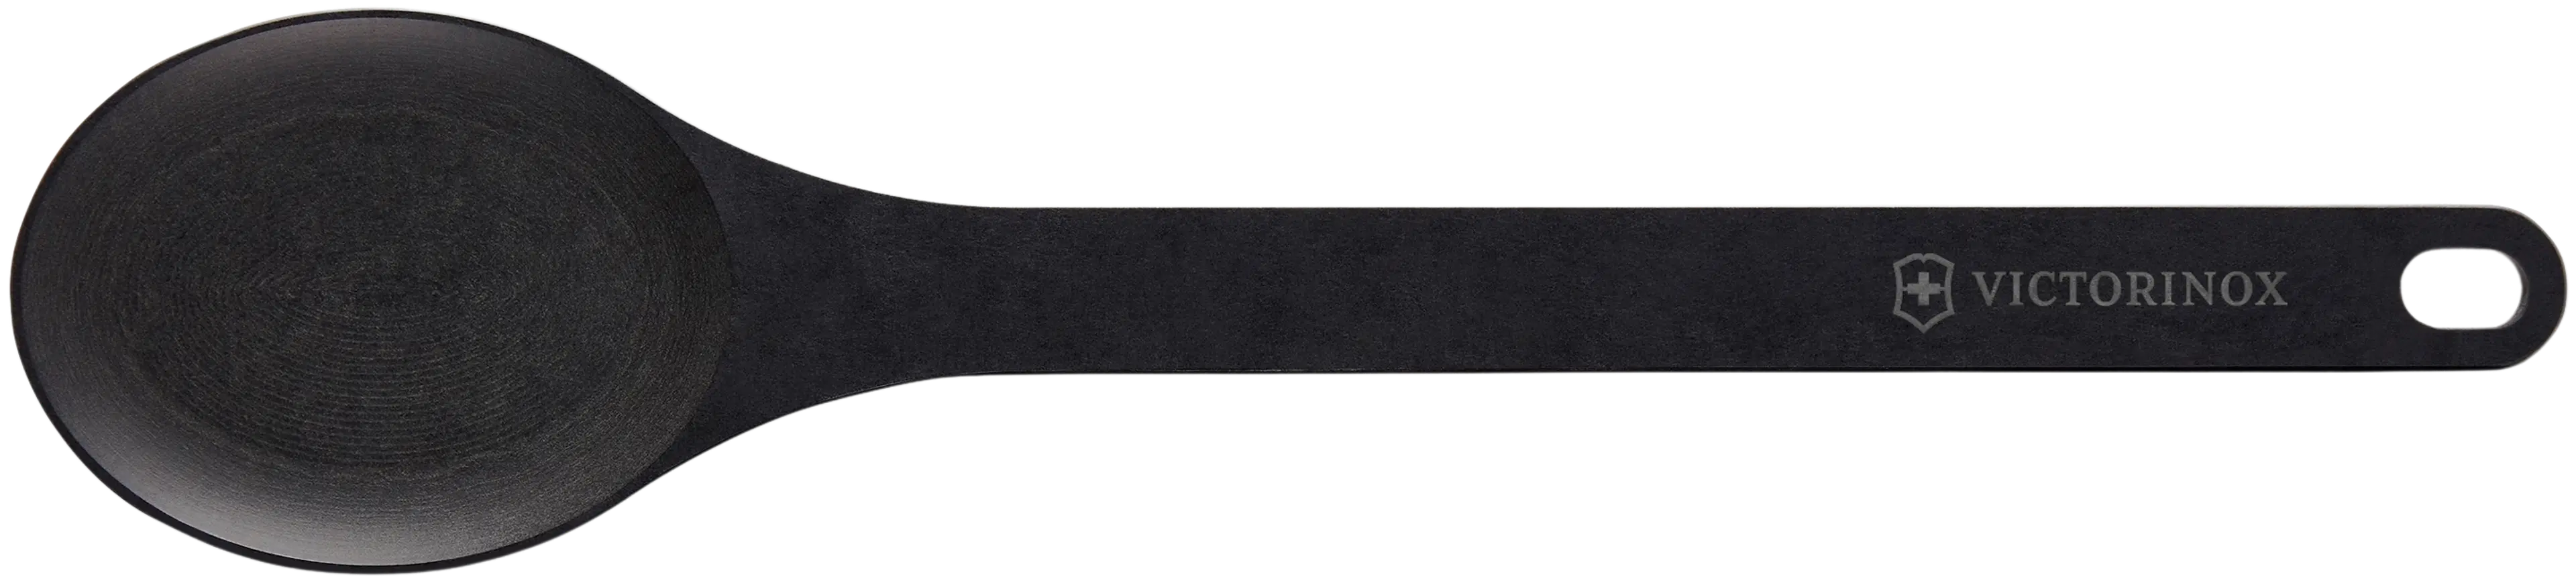 Victorinox sekoituslusikka 33 cm musta